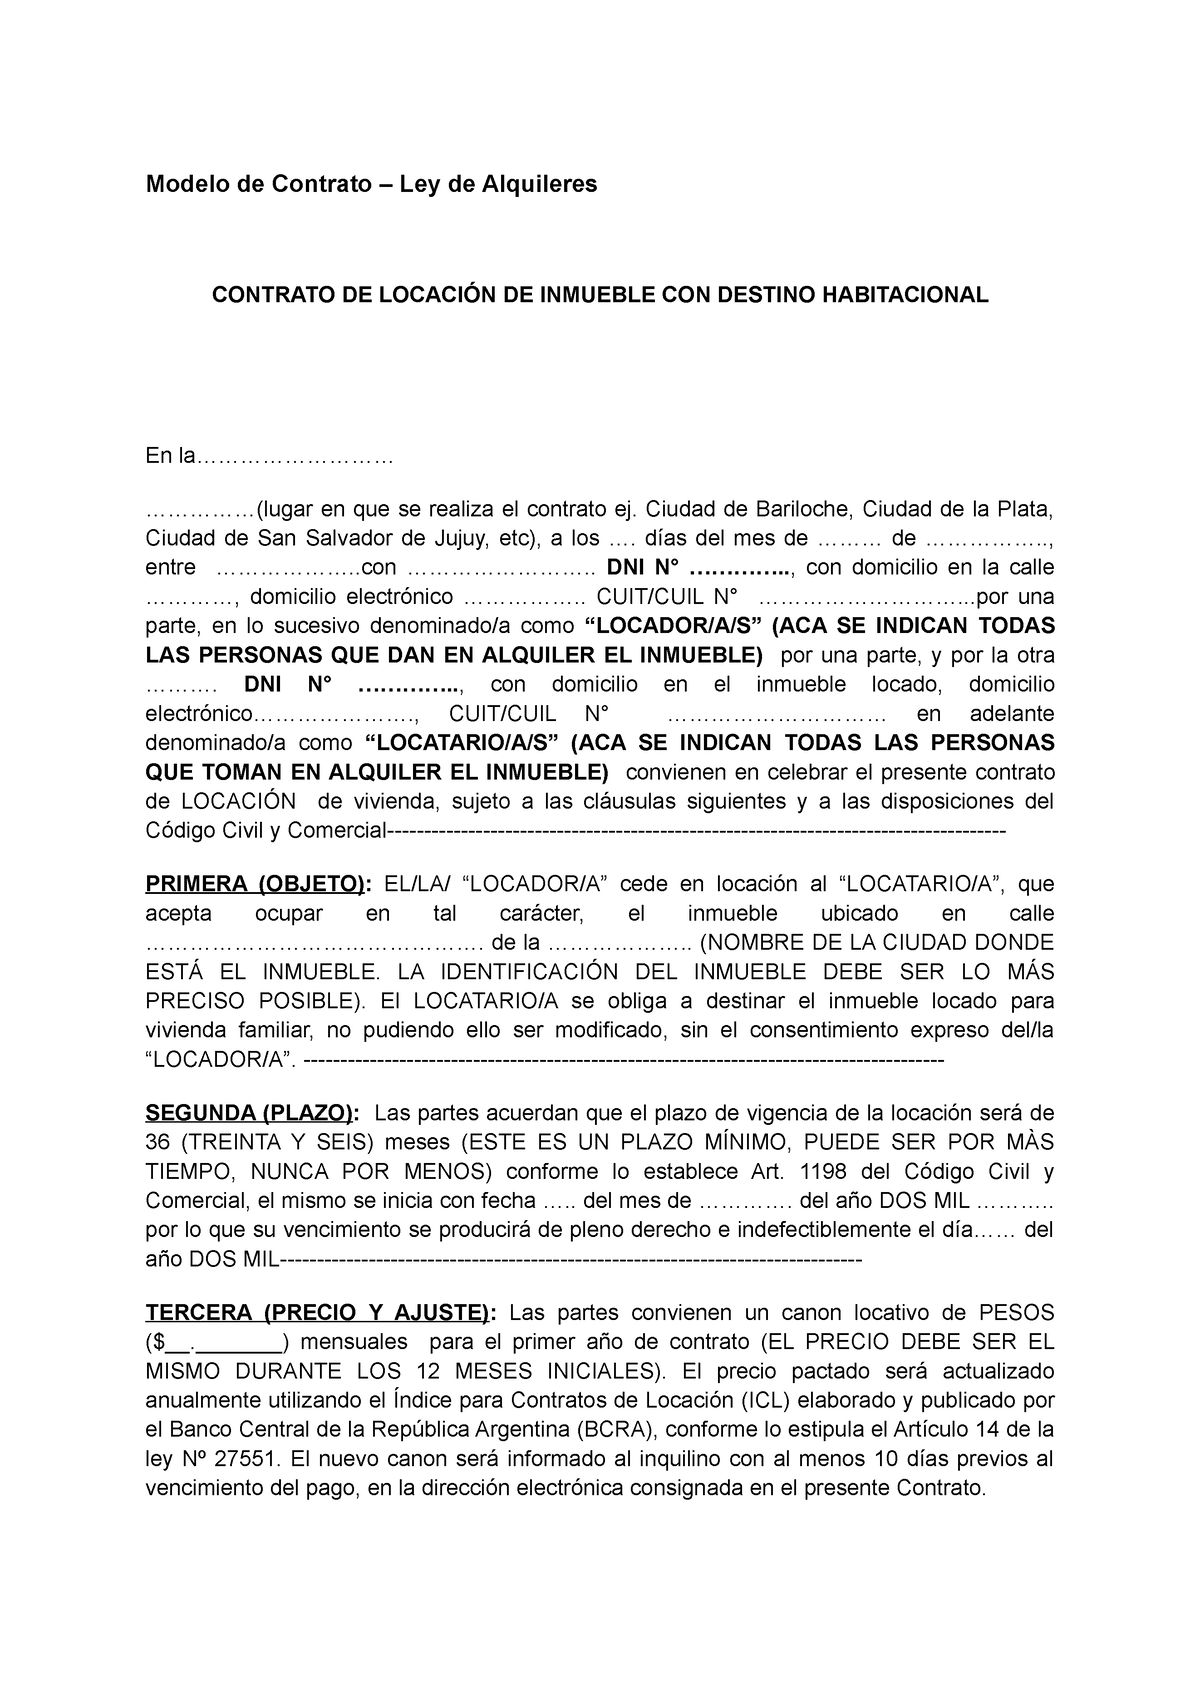 Modelo De Contrato De Locacion Modelo De Contrato Ley De Alquileres Contrato De LocaciÓn De 5948